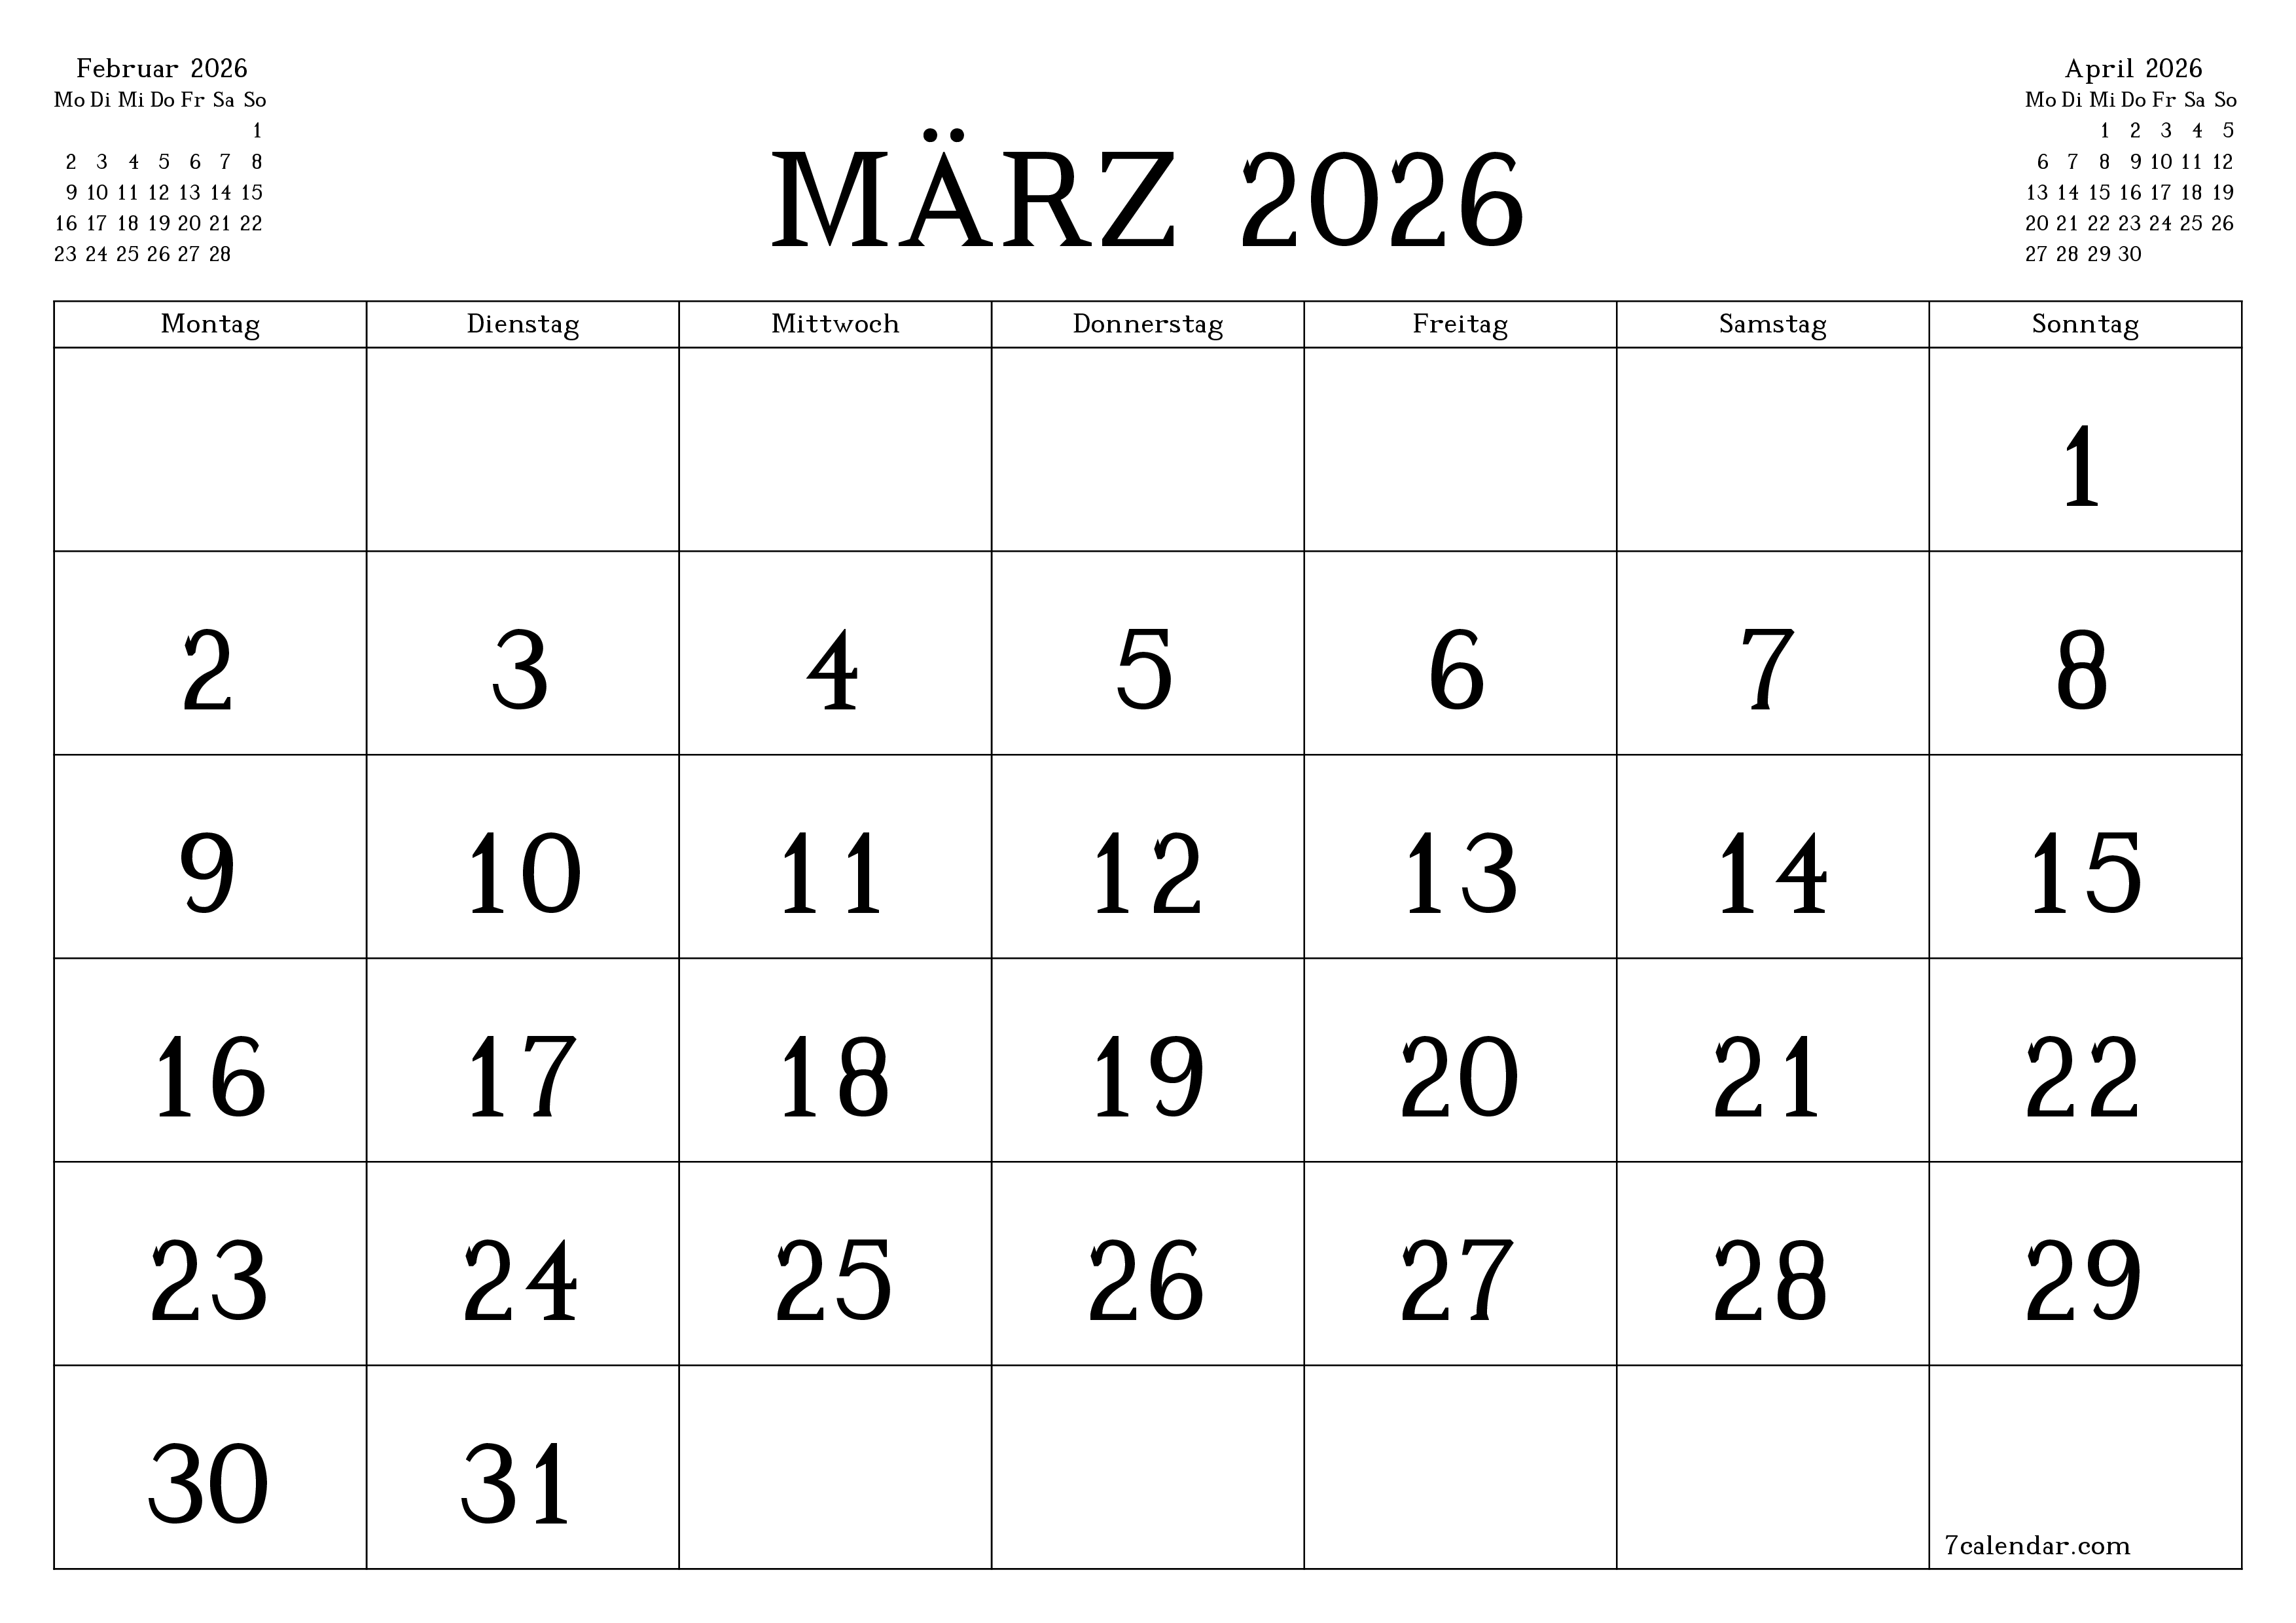 Monatsplaner für Monat März 2026 mit Notizen leeren, speichern und als PDF PNG German - 7calendar.com drucken